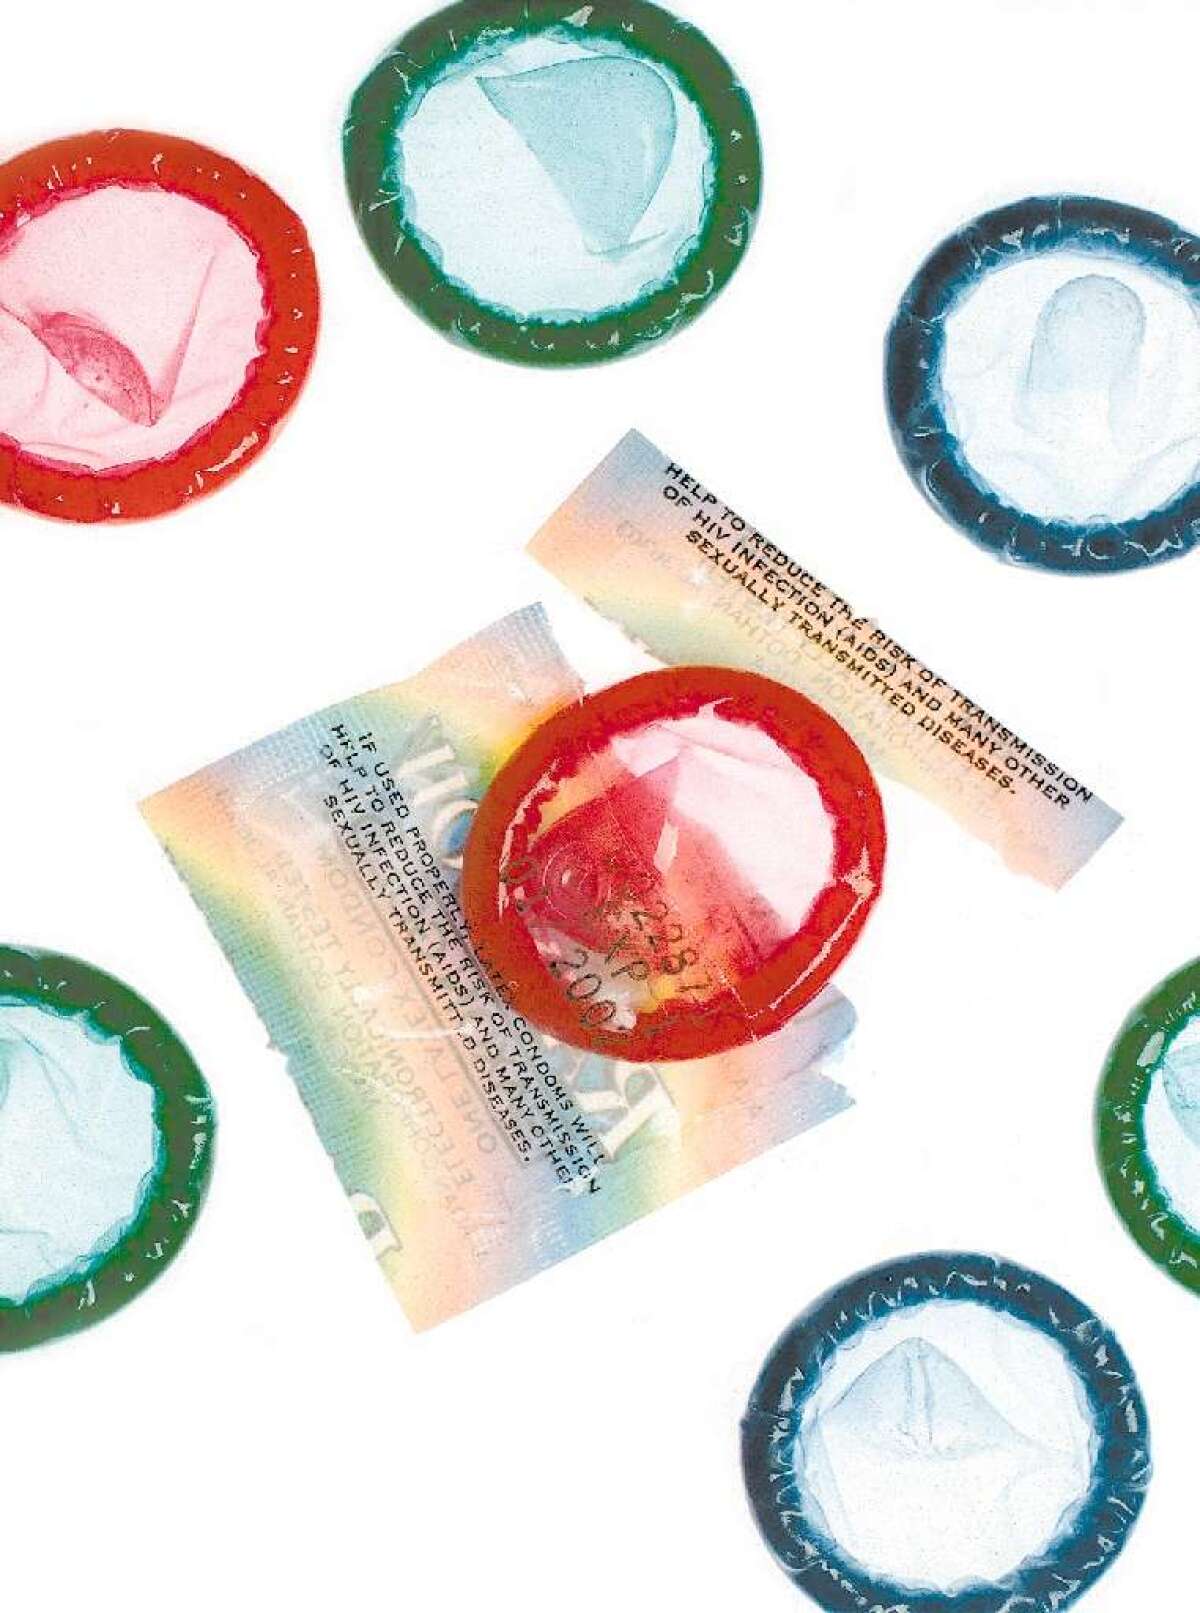 Sacarse el condón sin permiso, otra forma de abuso sexual 